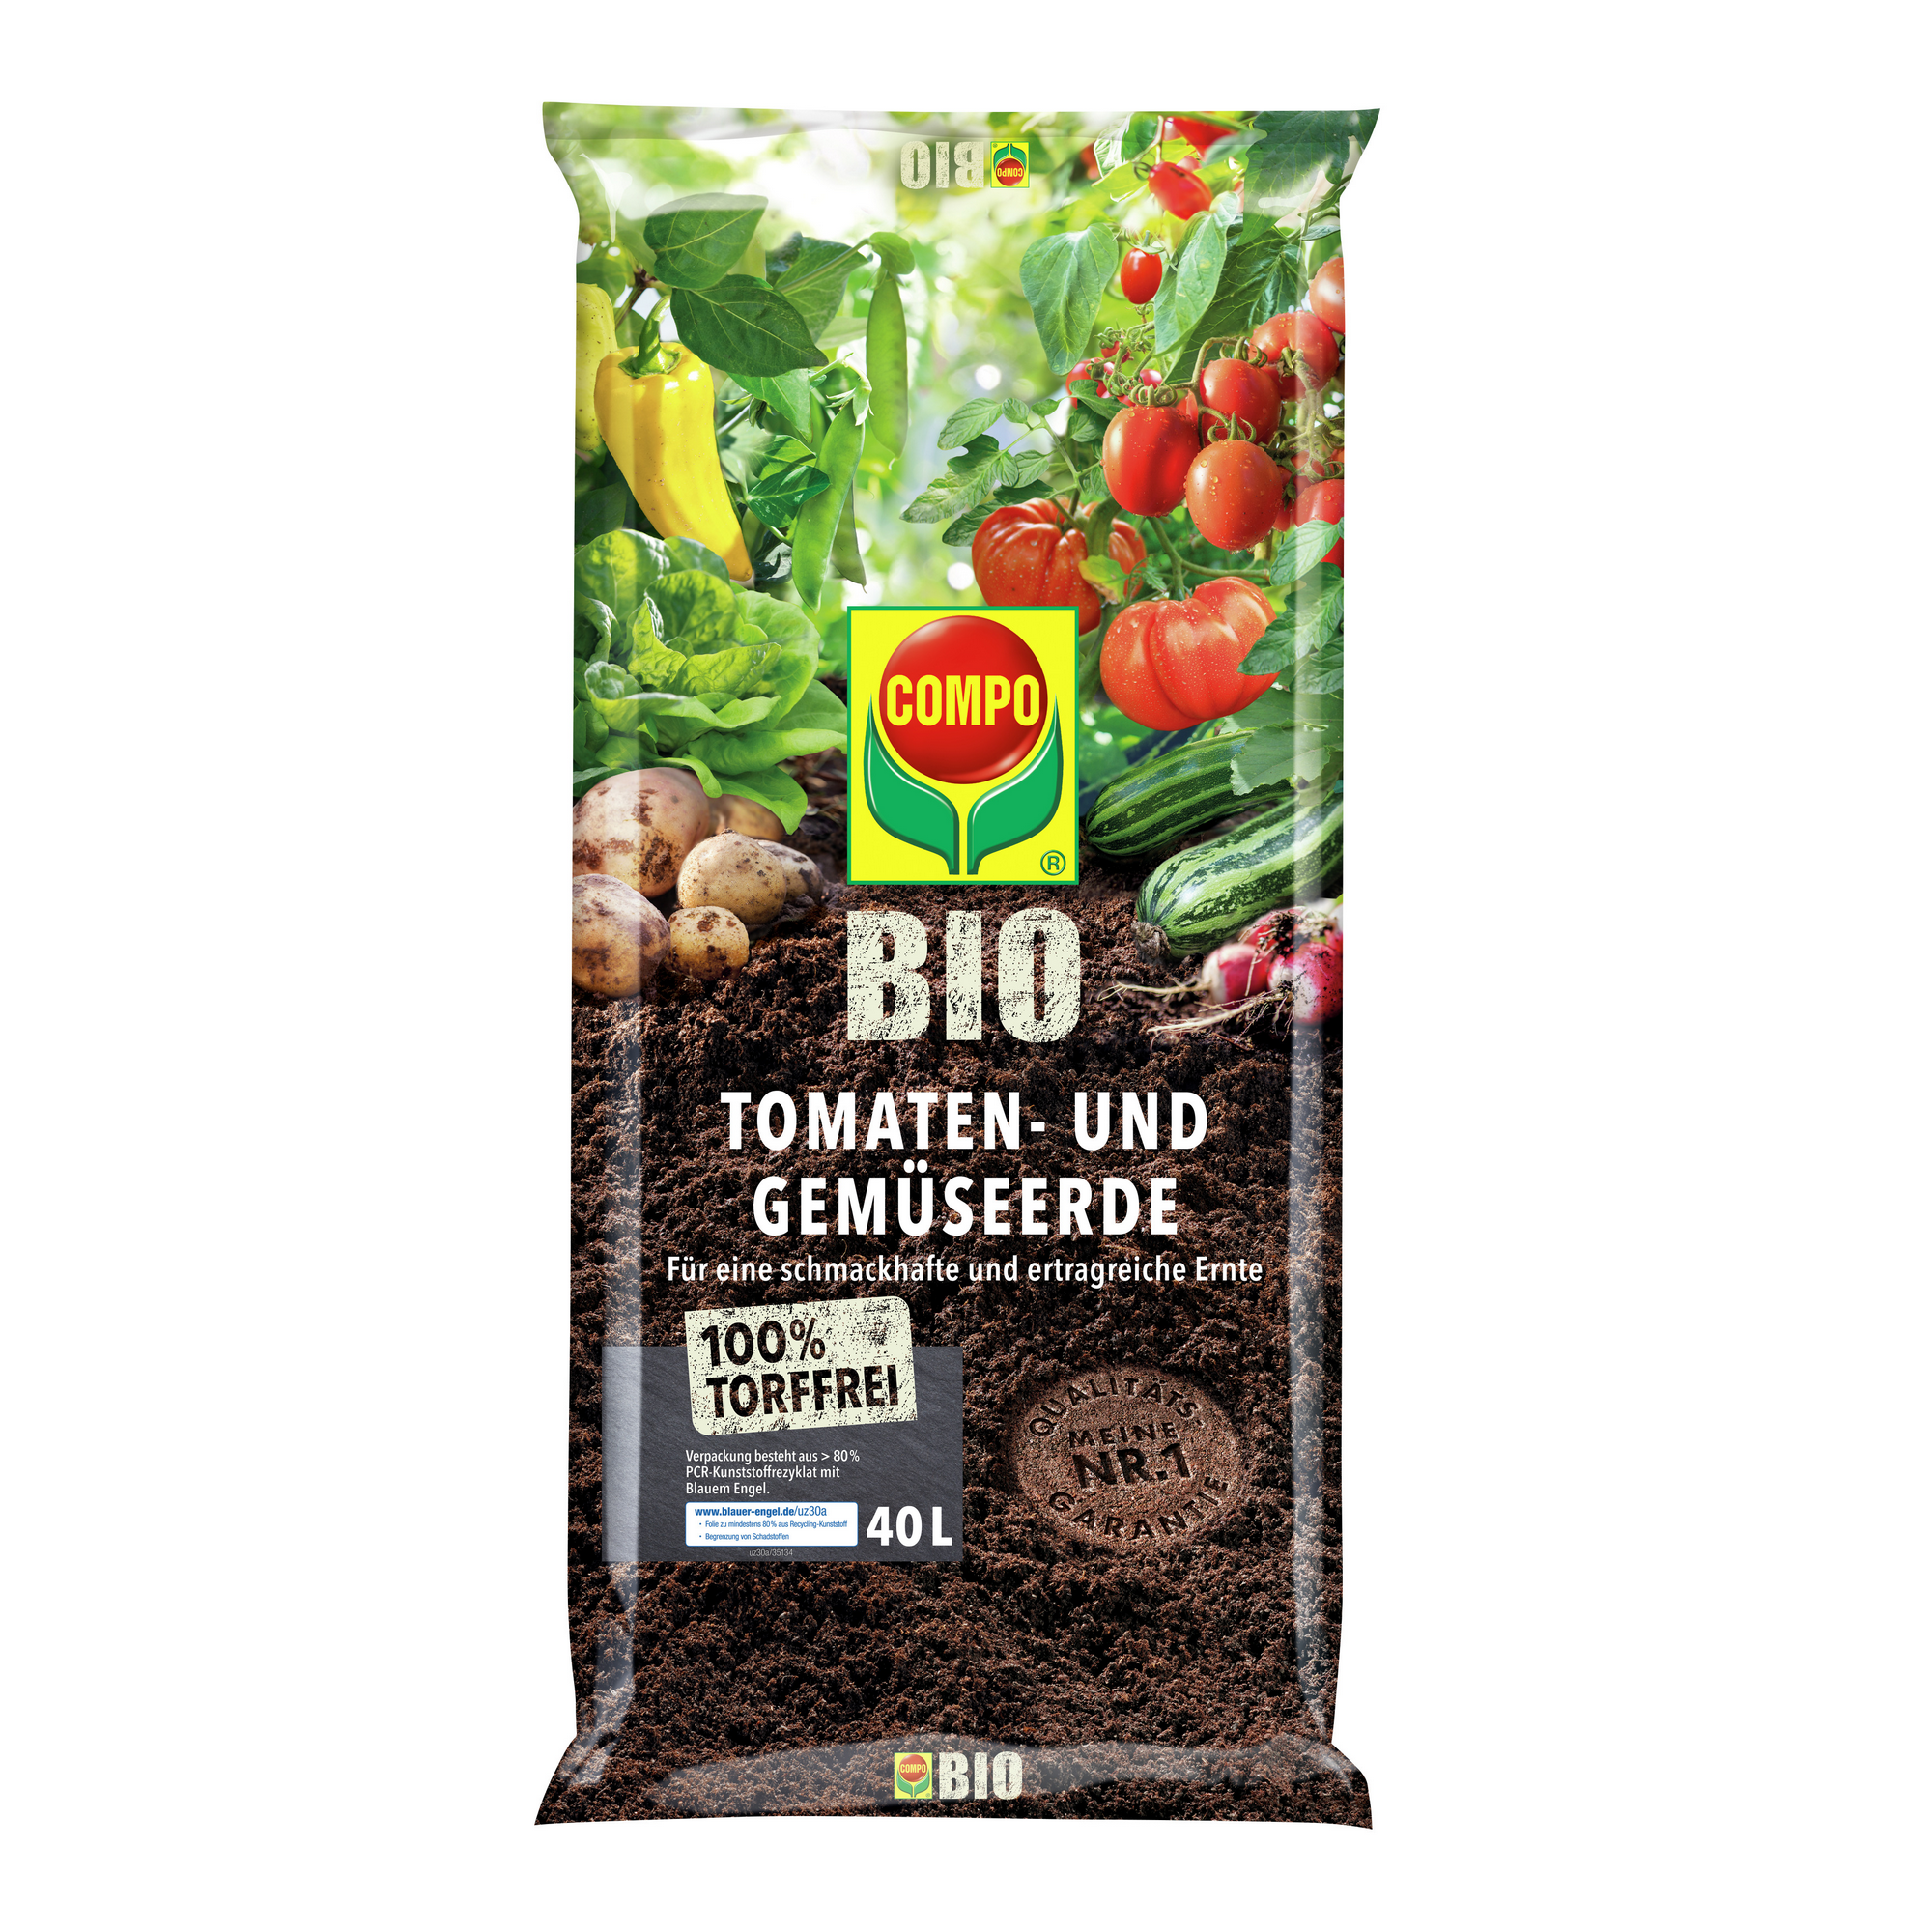 Bio-Tomaten- und Gemüseerde torffrei 40 l + product picture